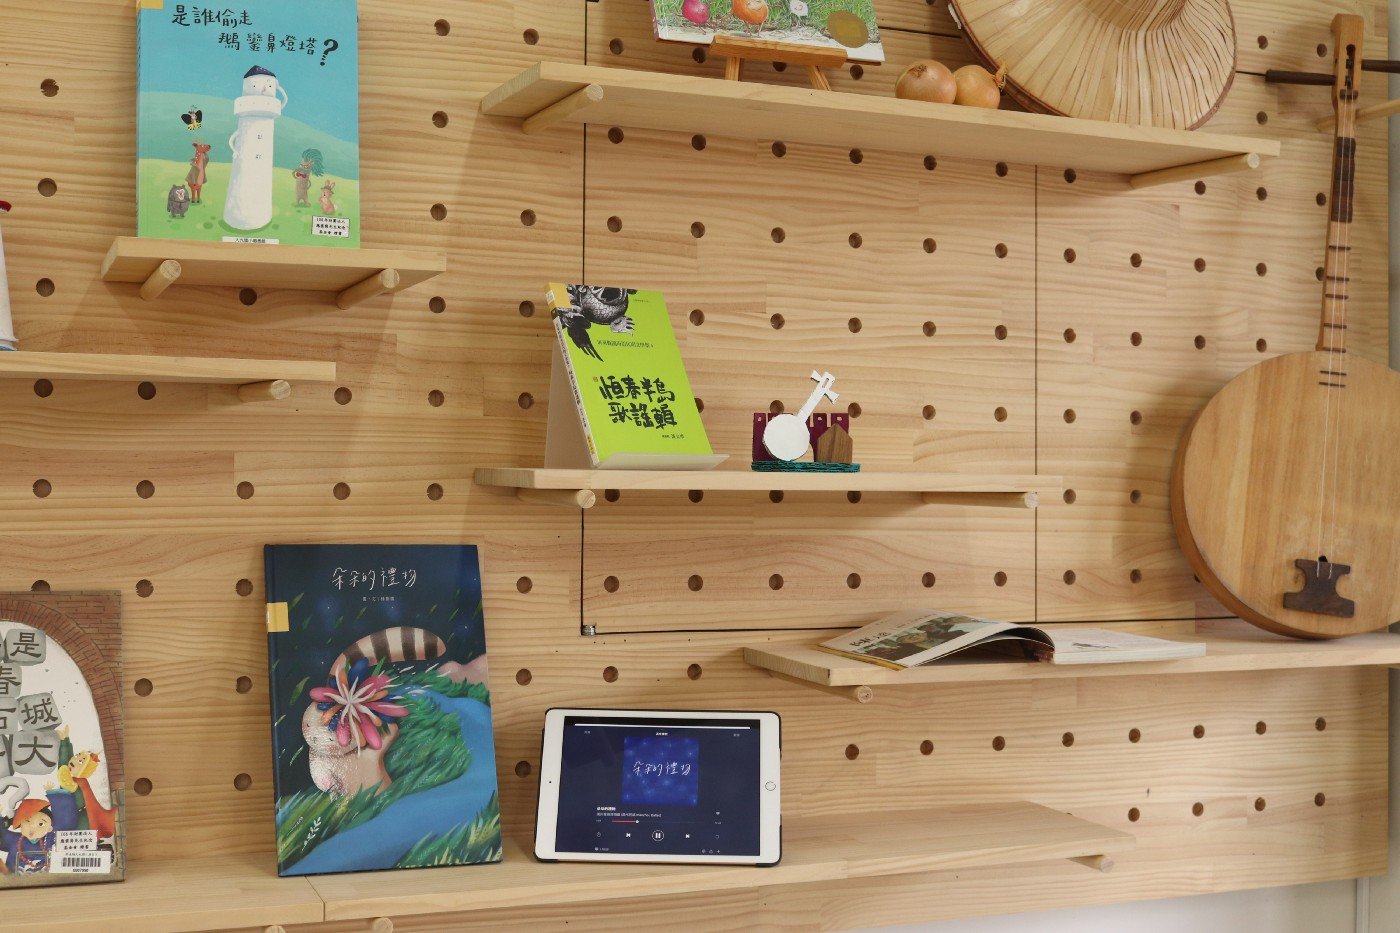 木頭洞洞板展示牆，可依據書籍內容，用視覺、聽覺、觸覺等展示每月主題書籍。